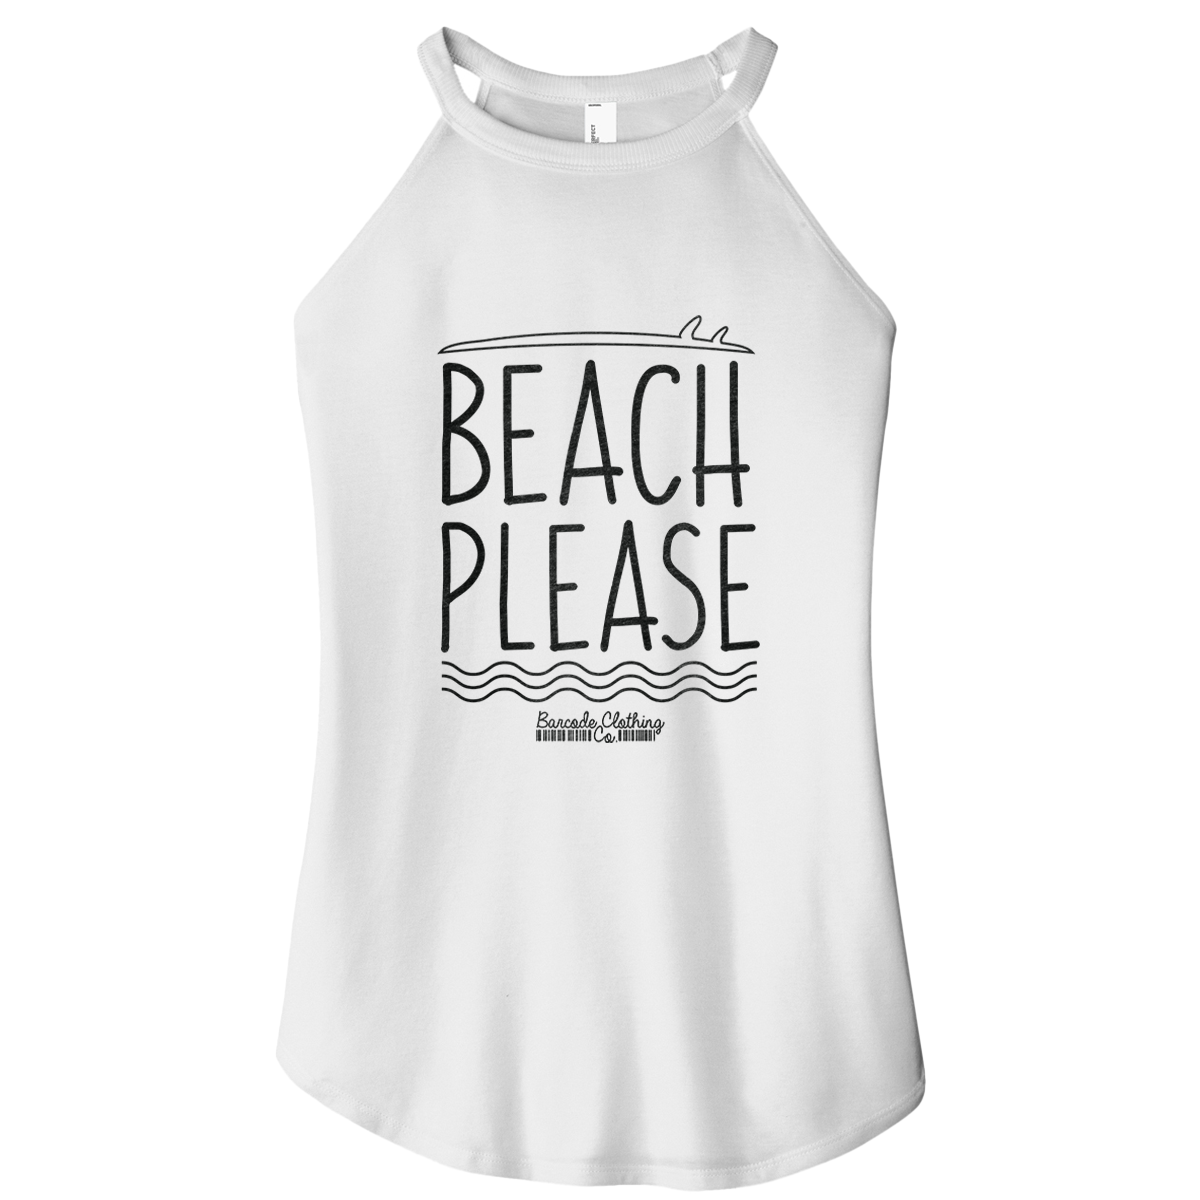 Beach Please Rocker Tank